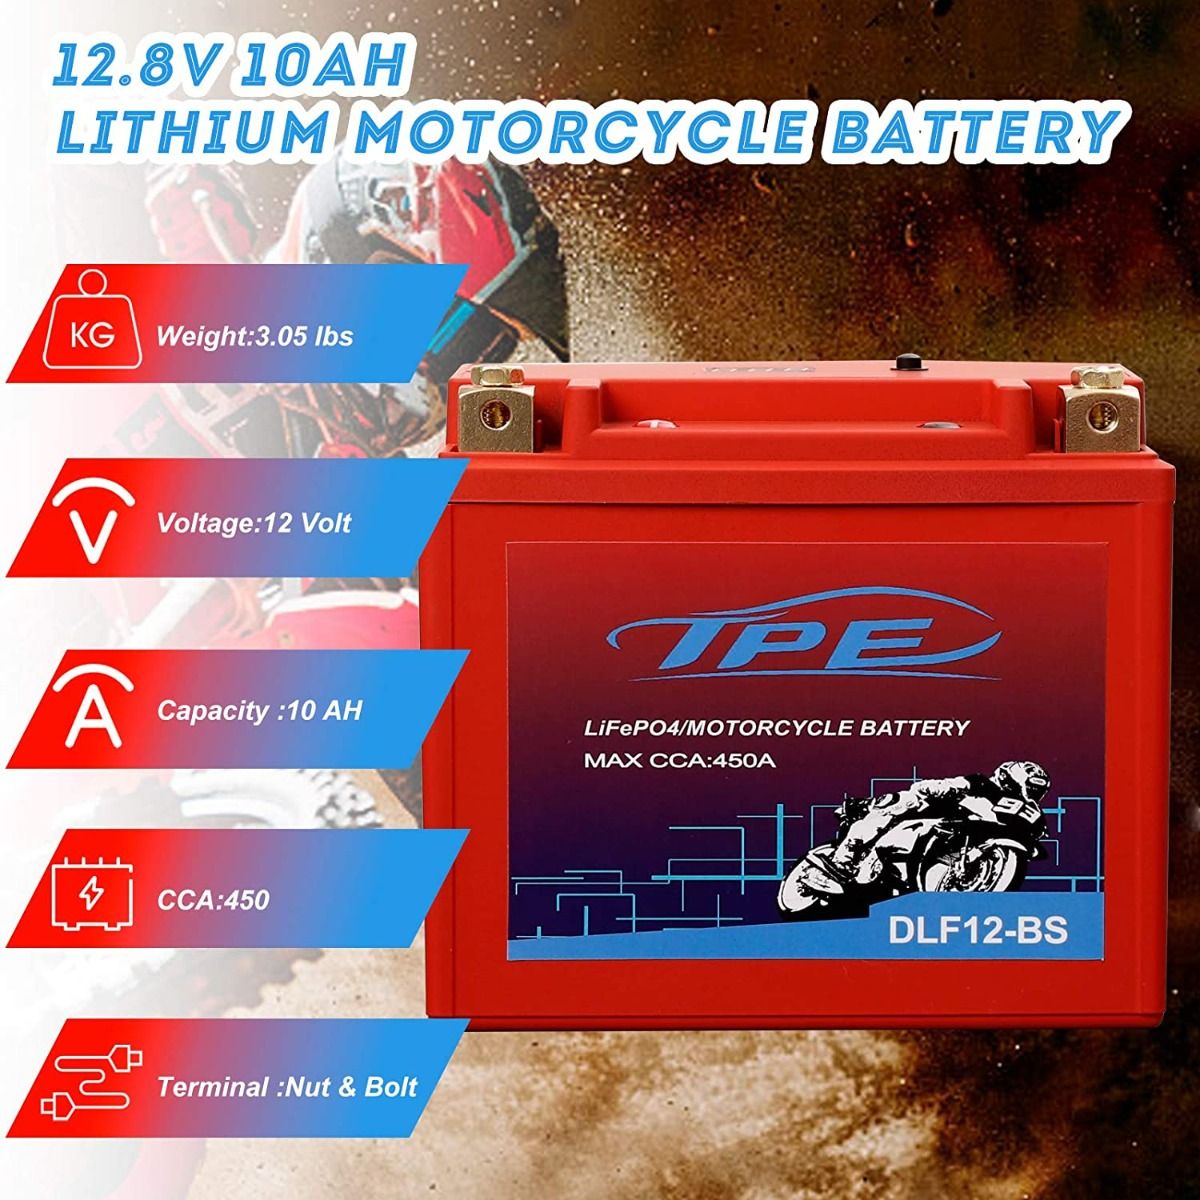 Batterie moto Lithium YTX12-BS / YT12A-BS / YB12B-B2 12V 10AH